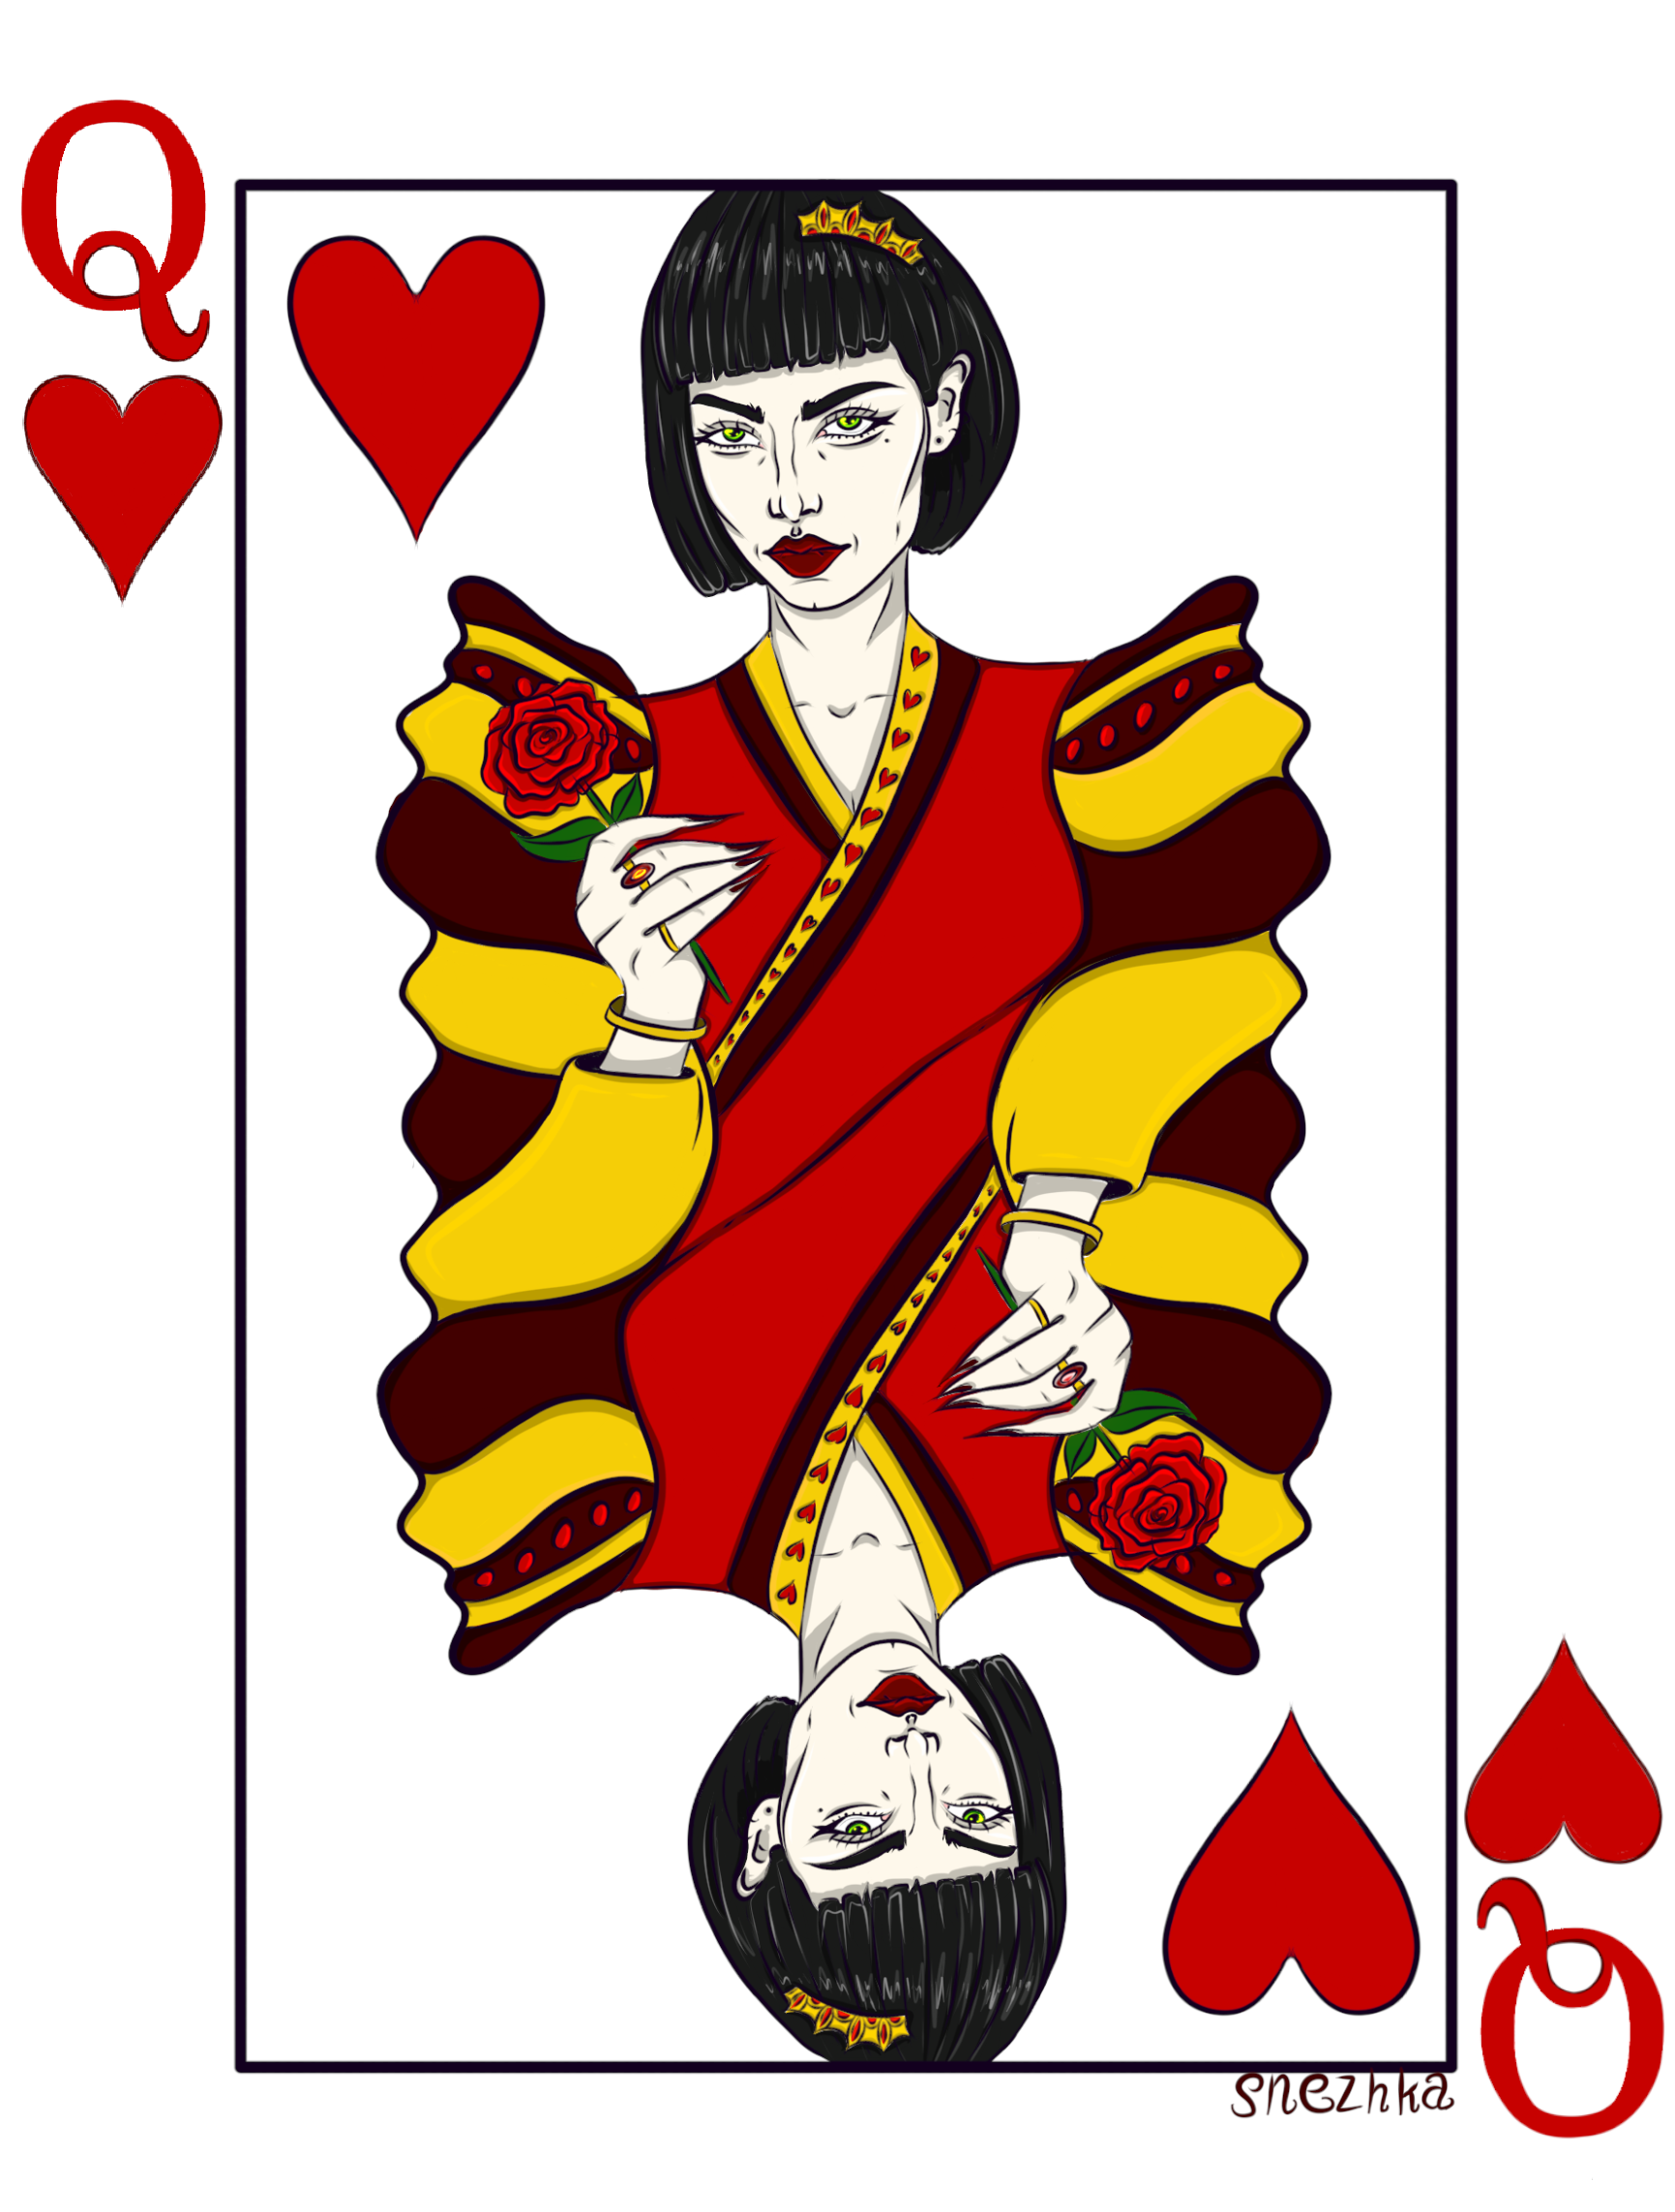 Червонная 2. Червонная дама стиль. Червонные карты. Червонная Королева схема вышивки. Иллюстрация карты Король и дама брутальные.